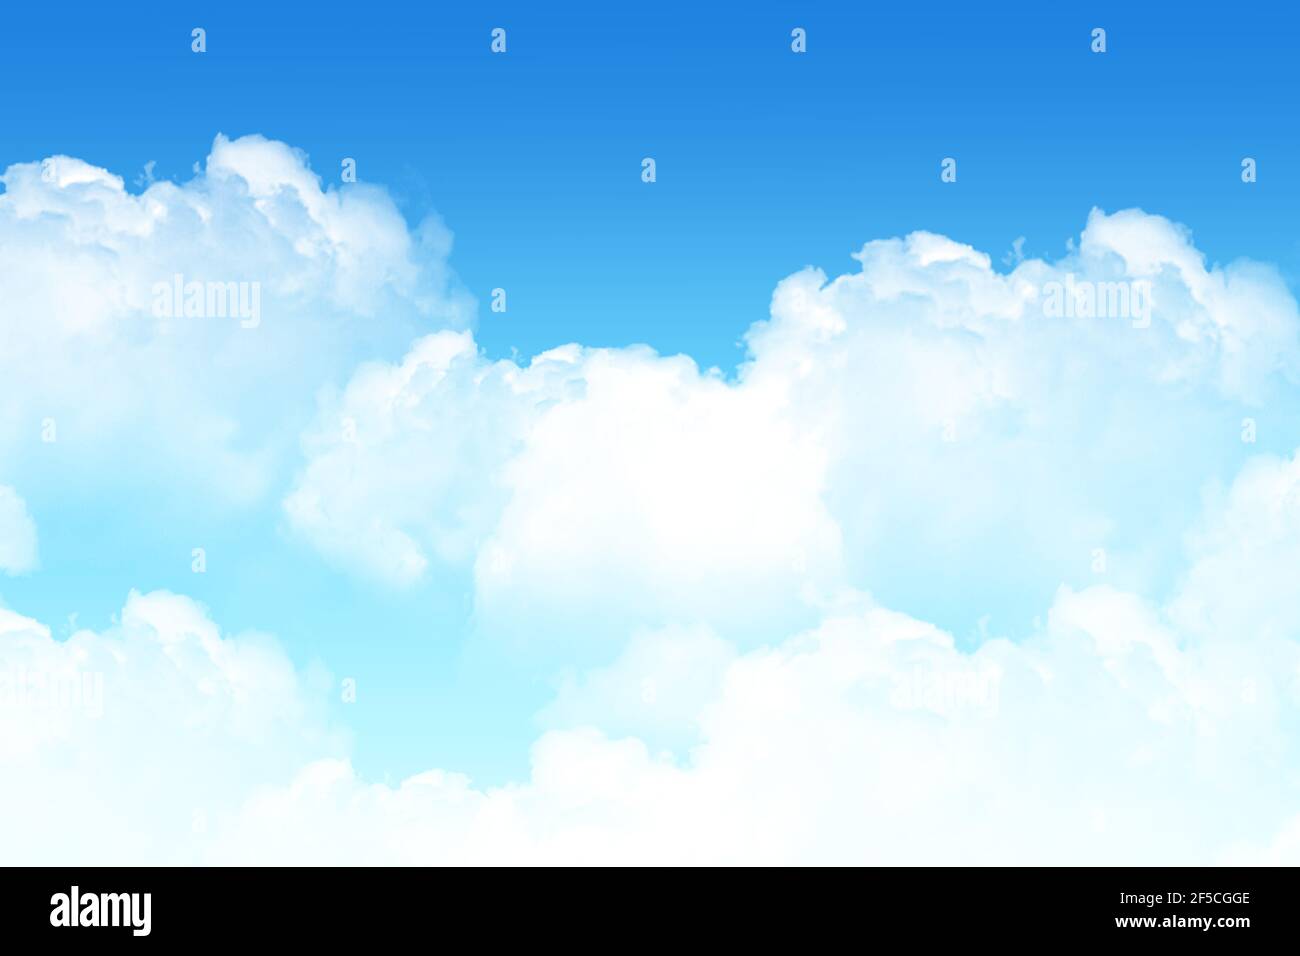 Hintergrund Vorlage Layout Website Wolke blauen Himmel Sonne strahlend weiß Fliegende Vordergrundperspektive in den Wolken über der Ozonschicht-Wolke Bandatmosphäre Stockfoto